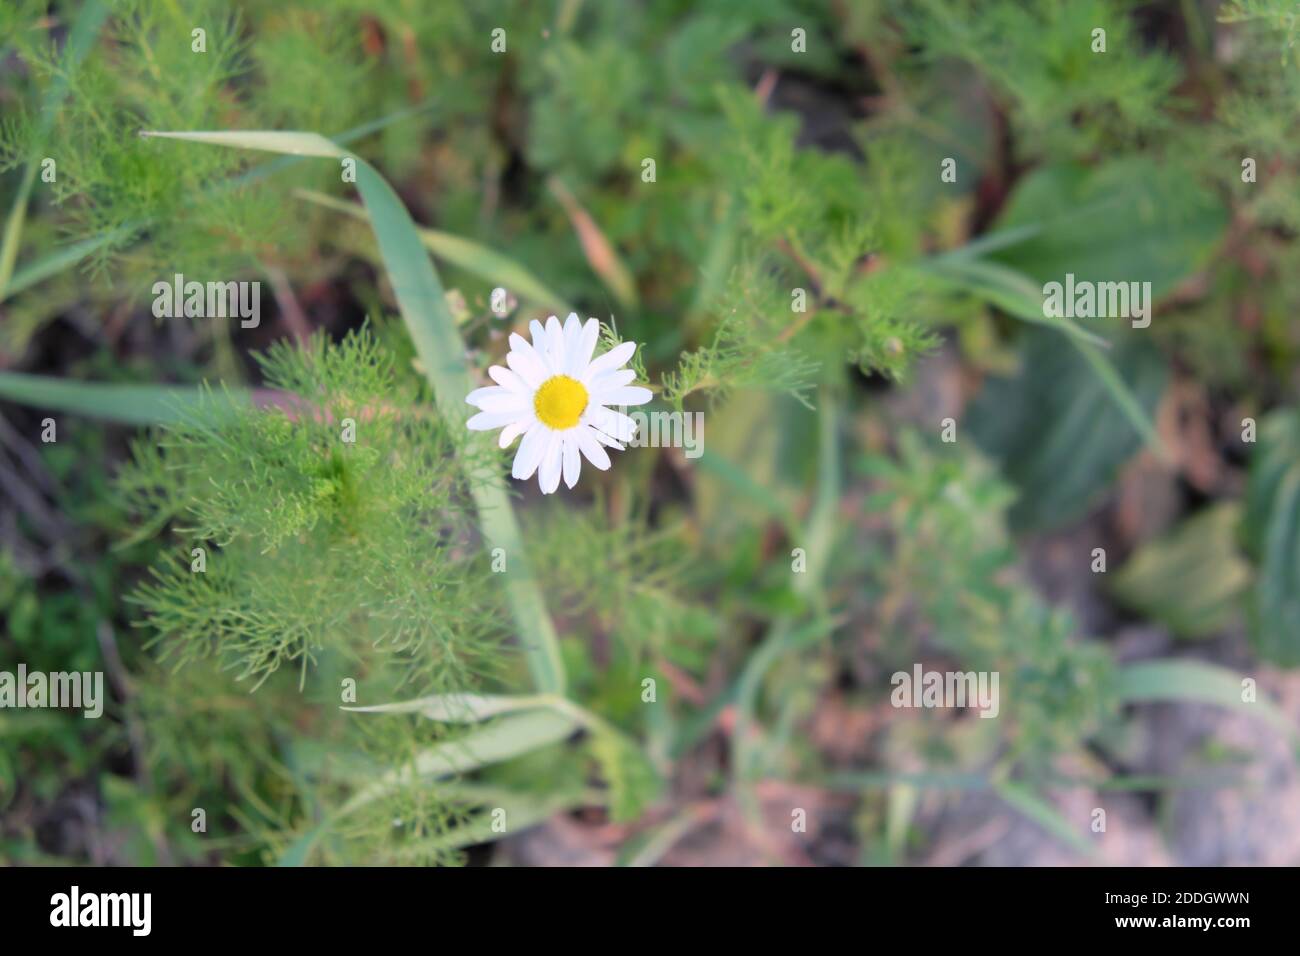 Petite fleur blanche d'une camomille de champ Photo Stock - Alamy